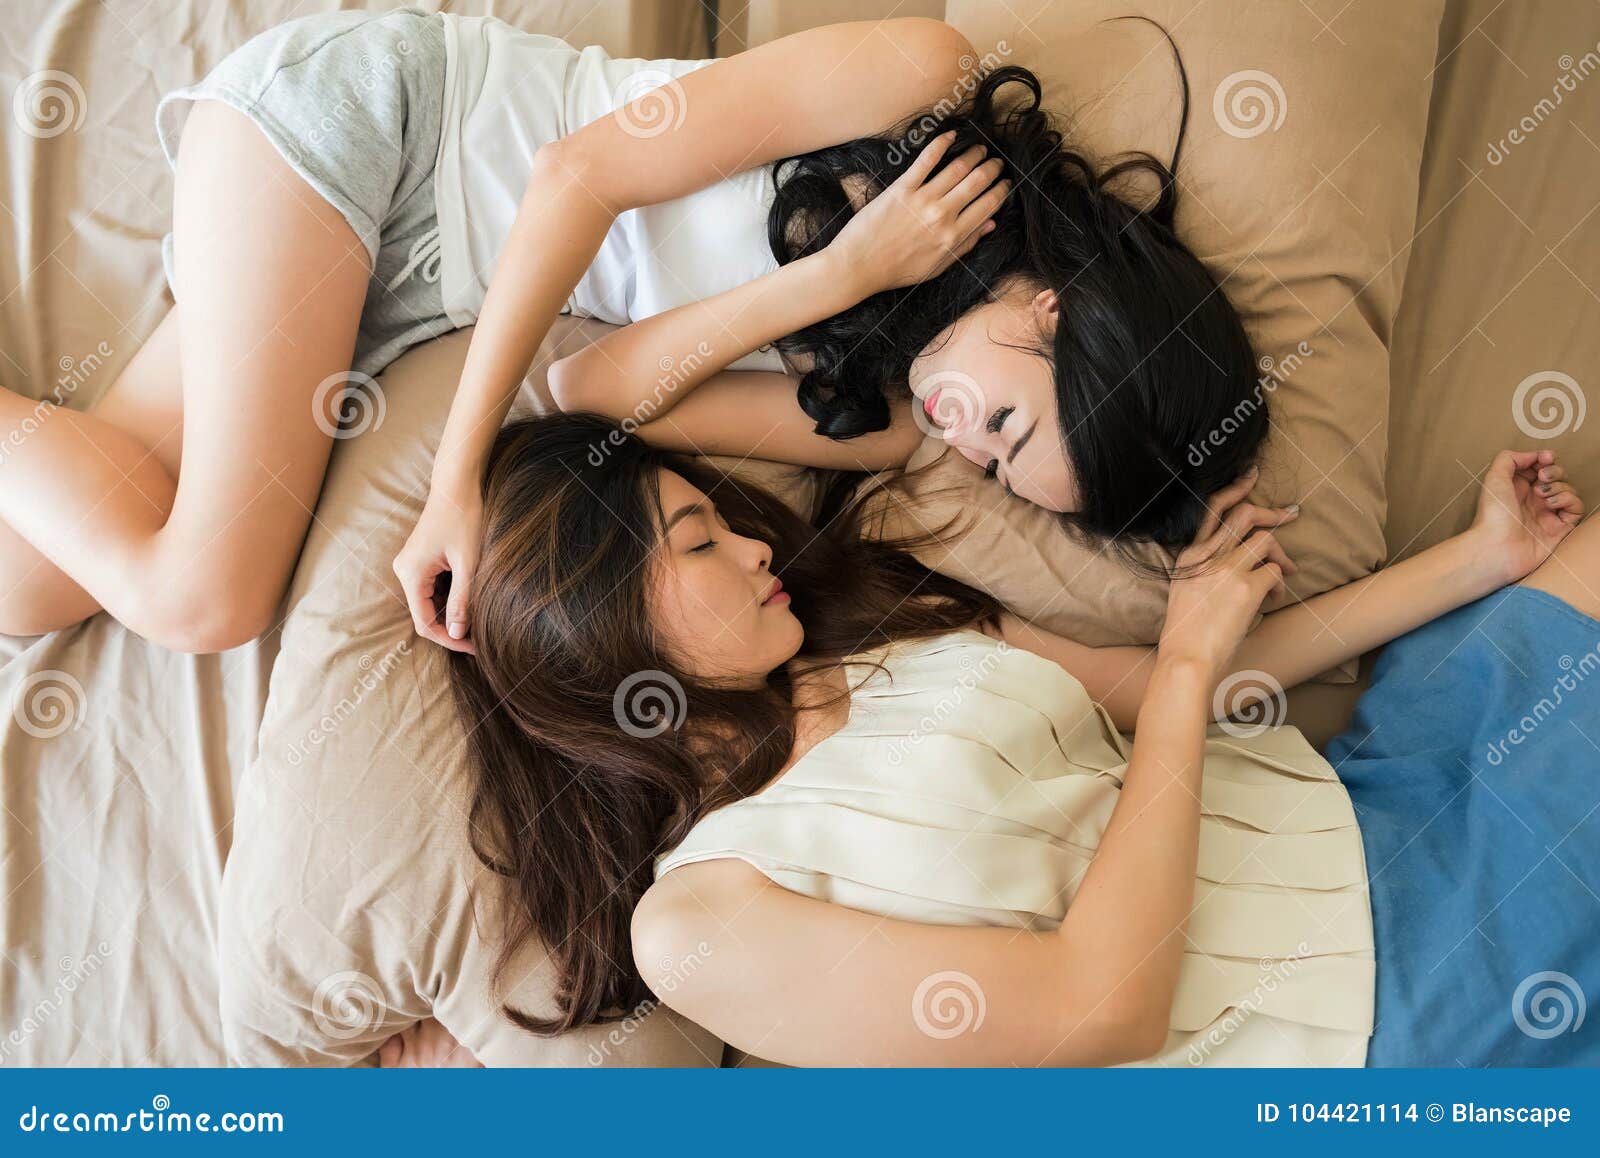 Hier Spielen Zwei Lesben Zusammen Im Bett